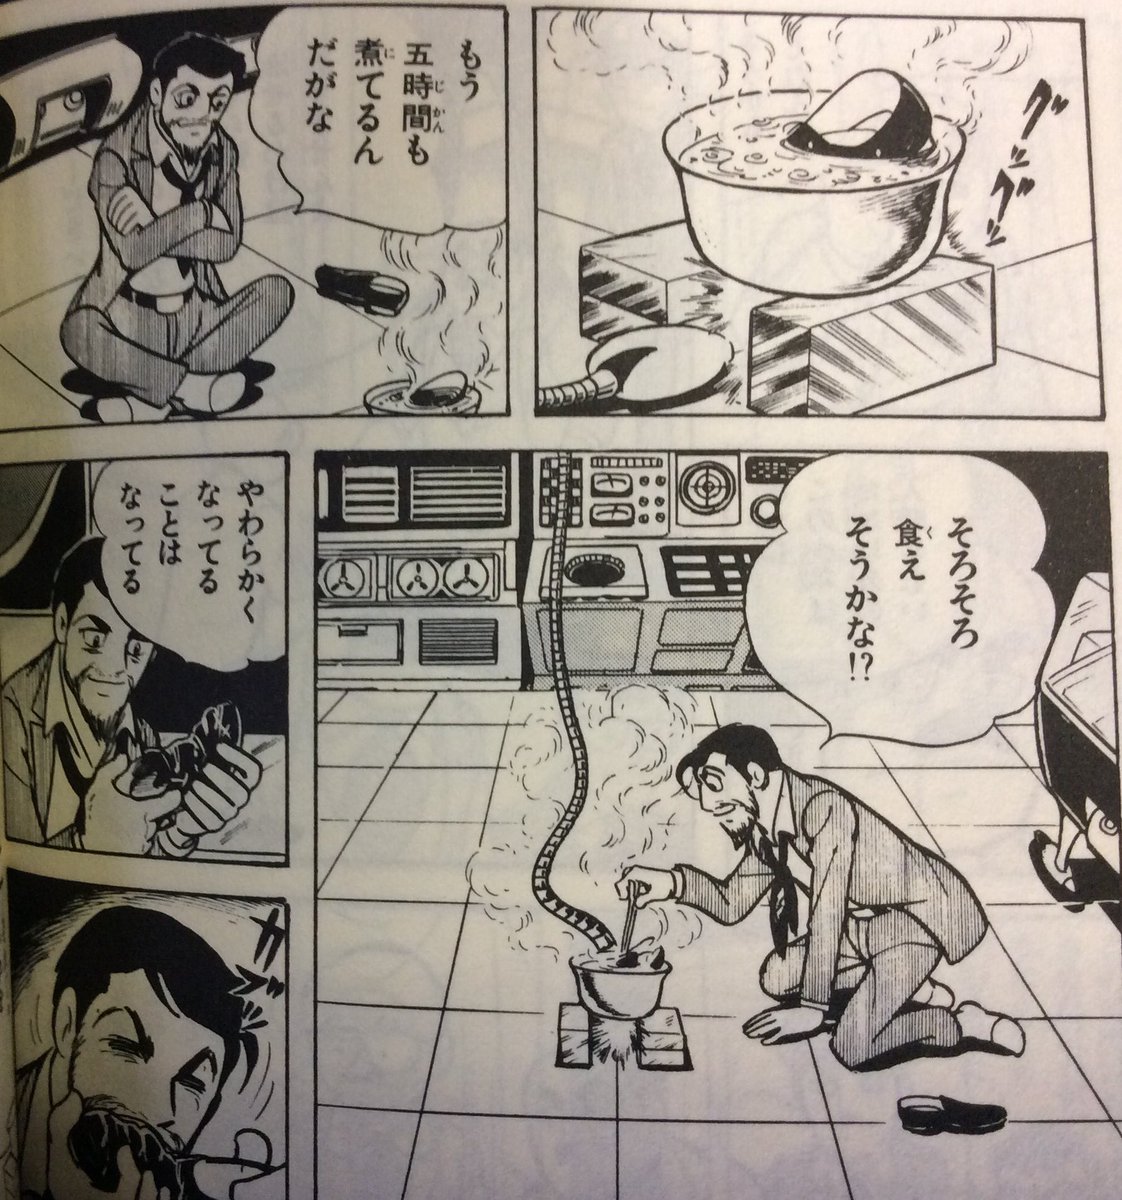 館長 Misterhiropon Garekinosima これこれ で 私も 革靴はよく煮たら食べられるんだって思ってました 実のところどうなんでしょう 食べられるの 食べられないの Twitter